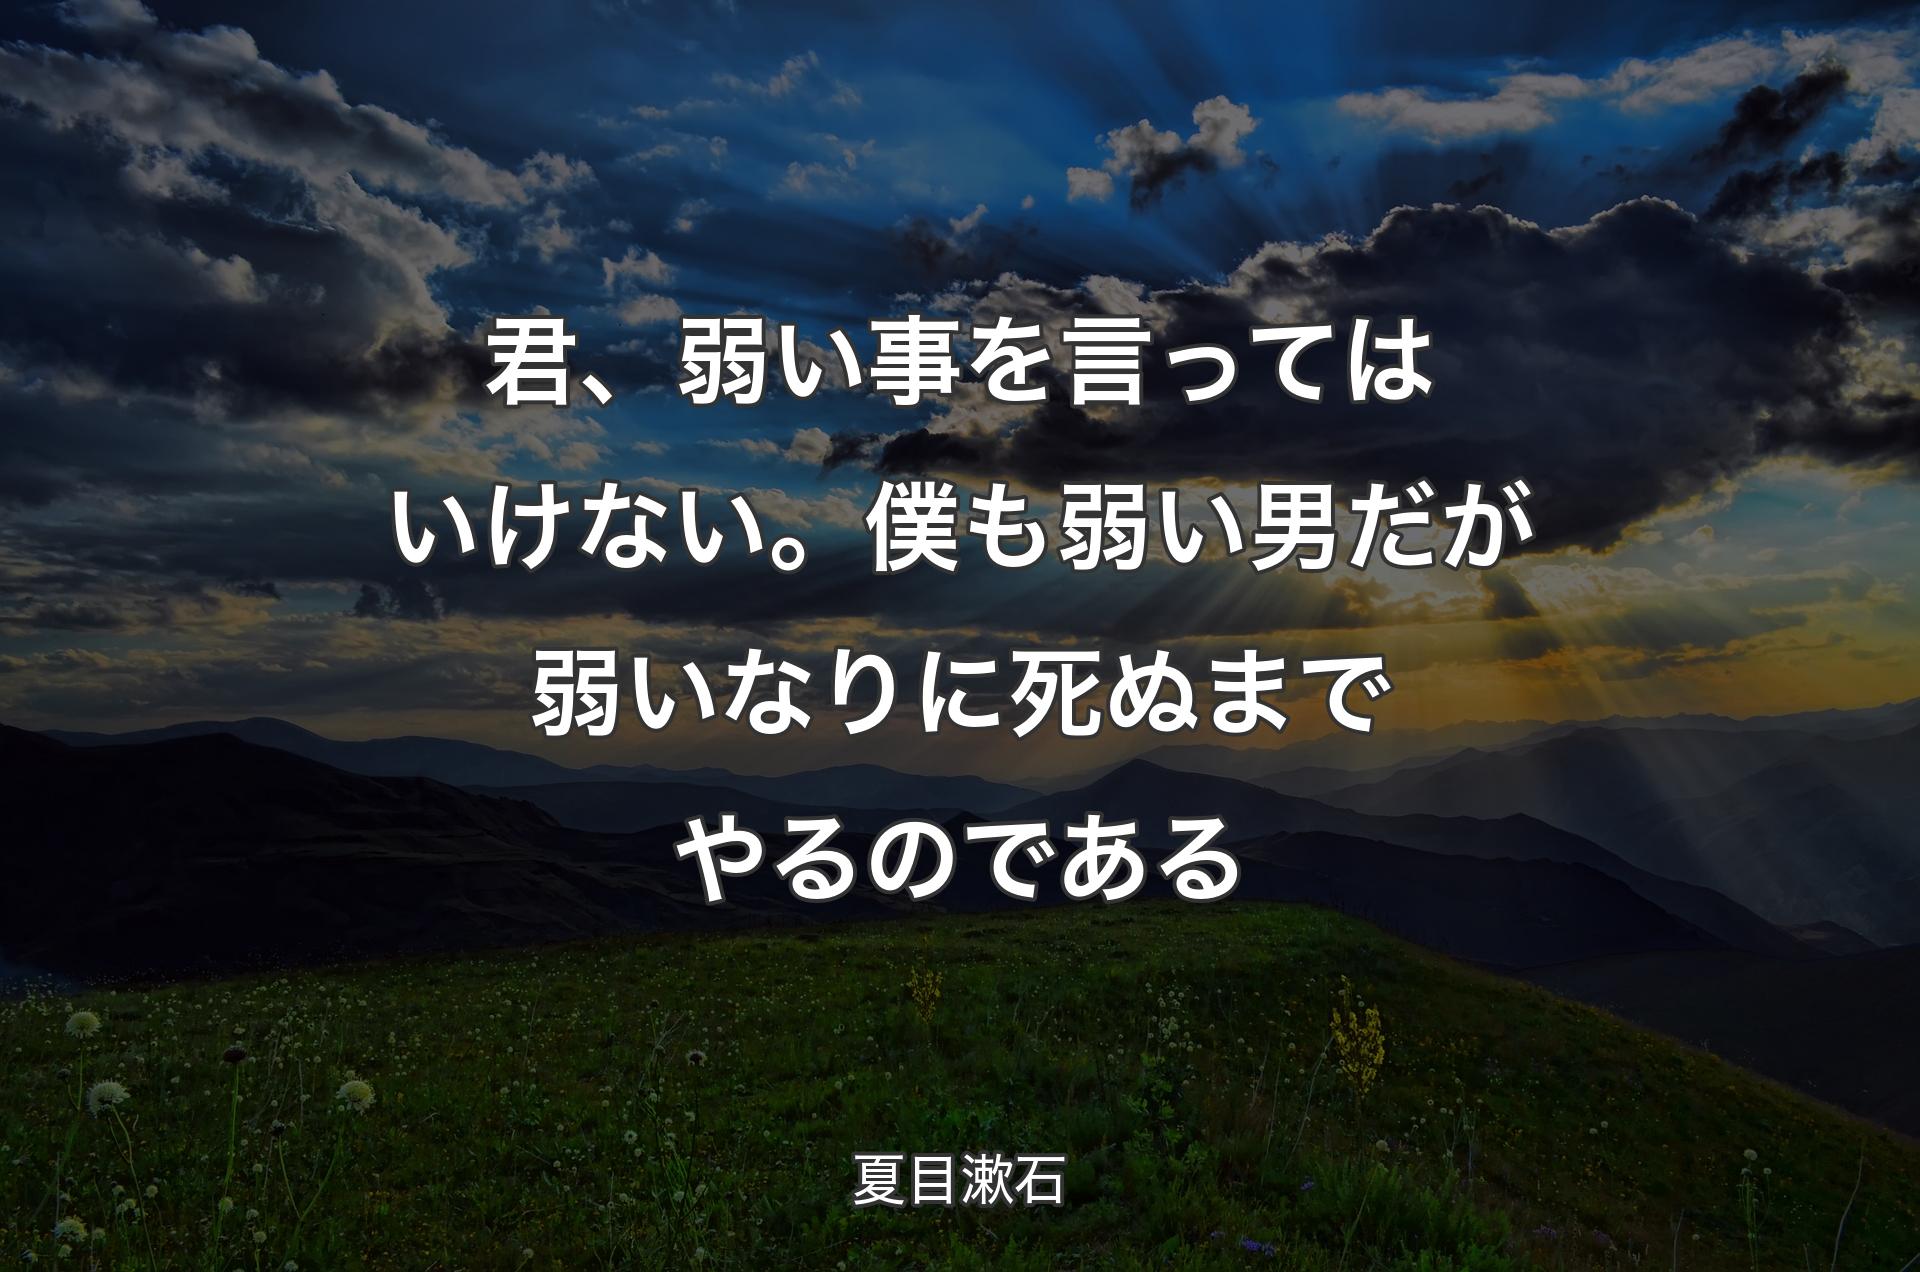 �君、弱い事を言ってはいけない。僕も弱い男だが弱いなりに死ぬまでやるのである - 夏目漱石